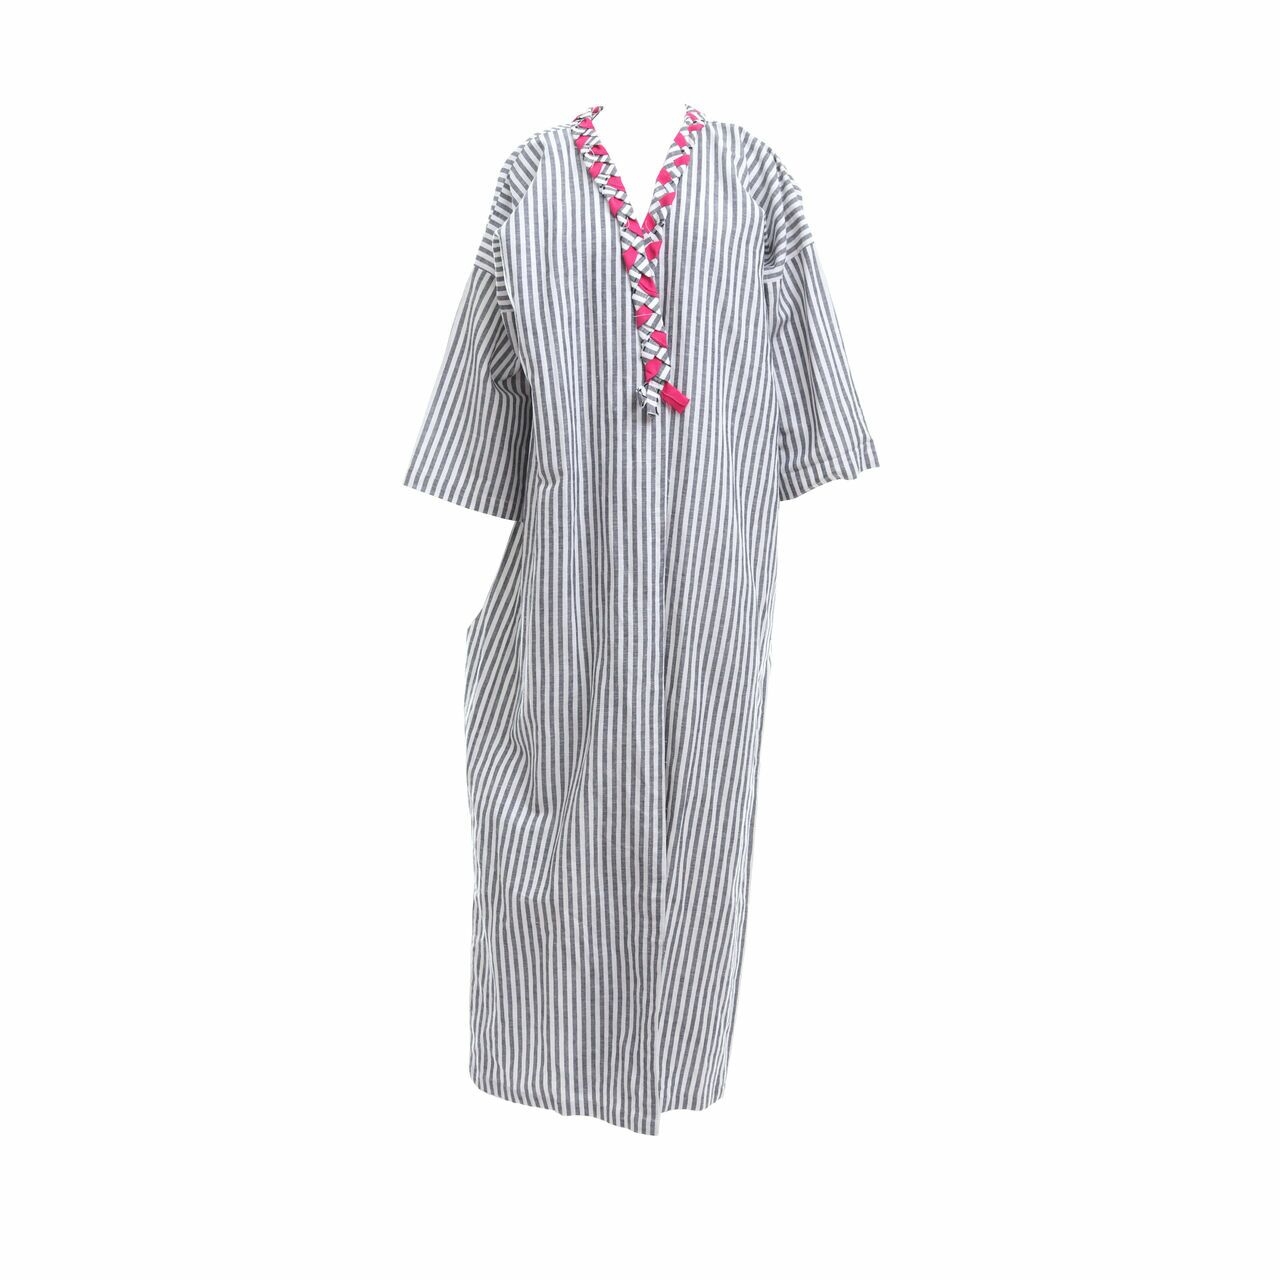 Luminara Grey & White Stripes Kimono